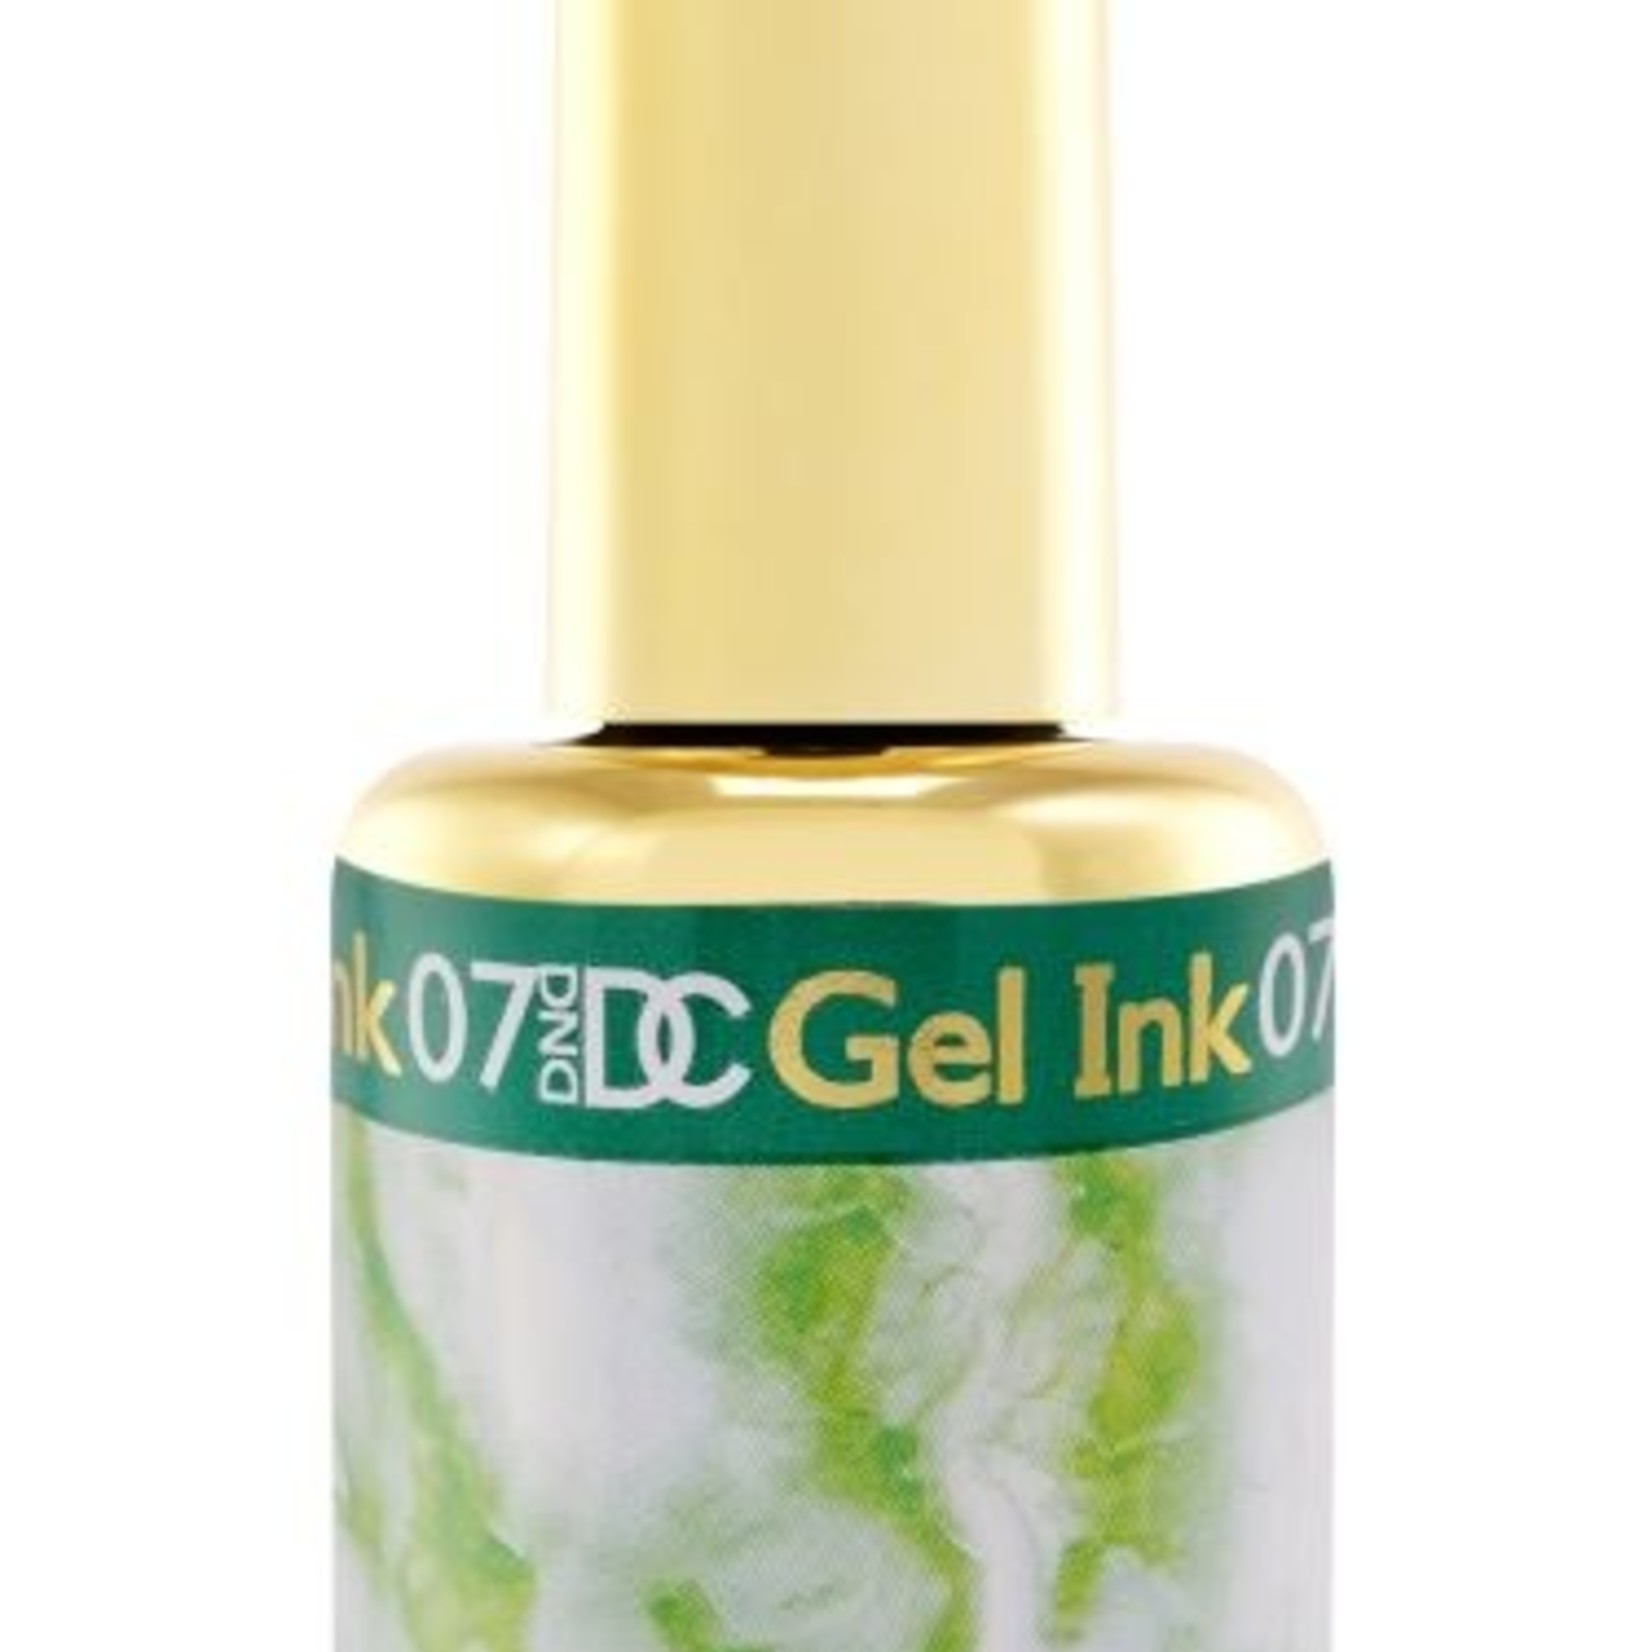 DC - Marble Gel Ink - 07 - Green - .6 fl oz